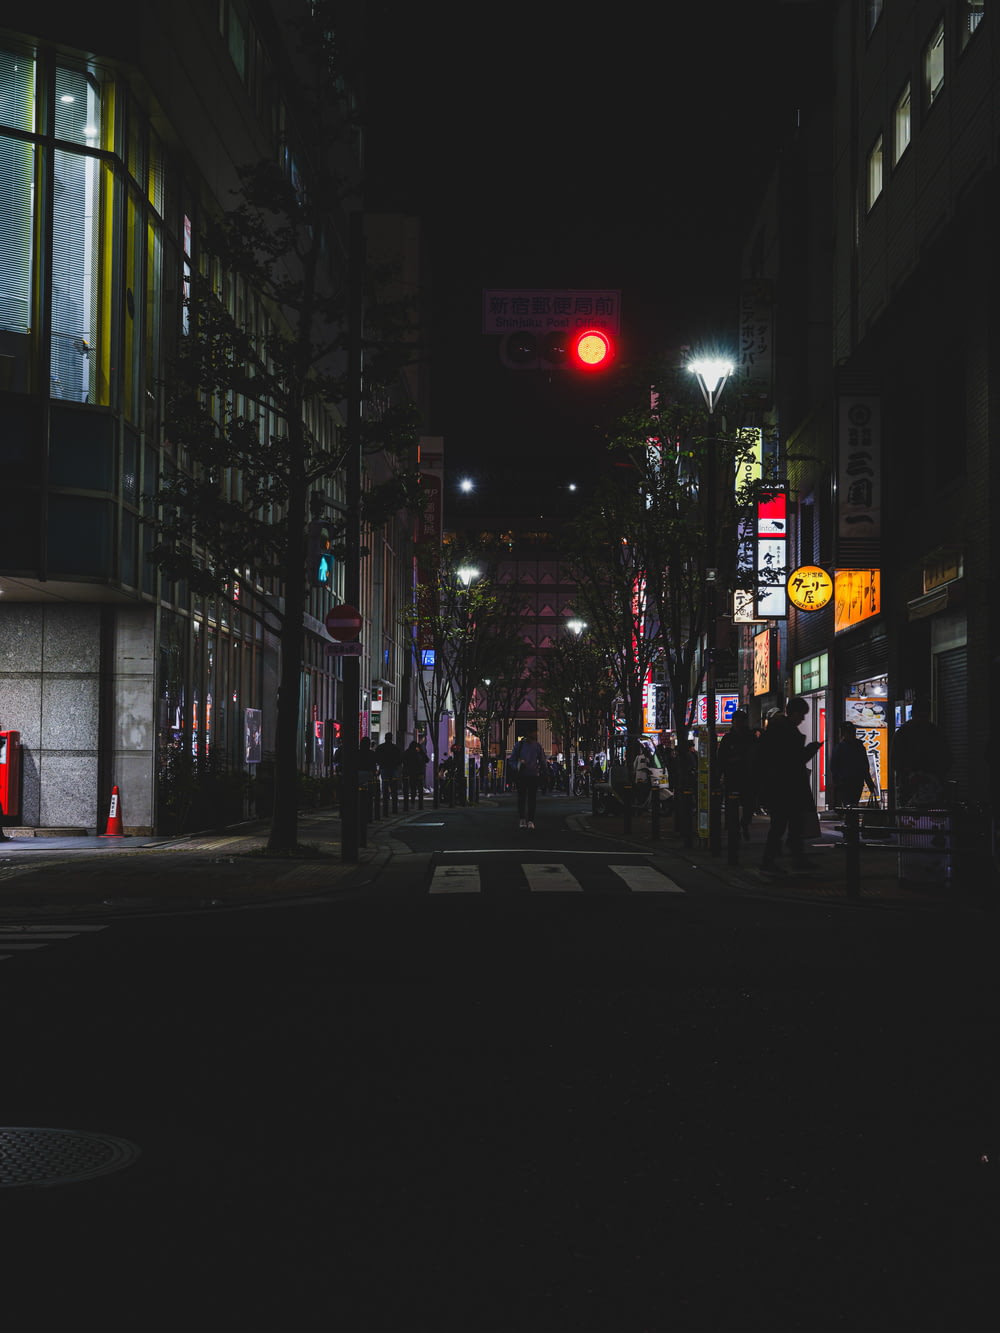 una strada cittadina di notte con un semaforo rosso